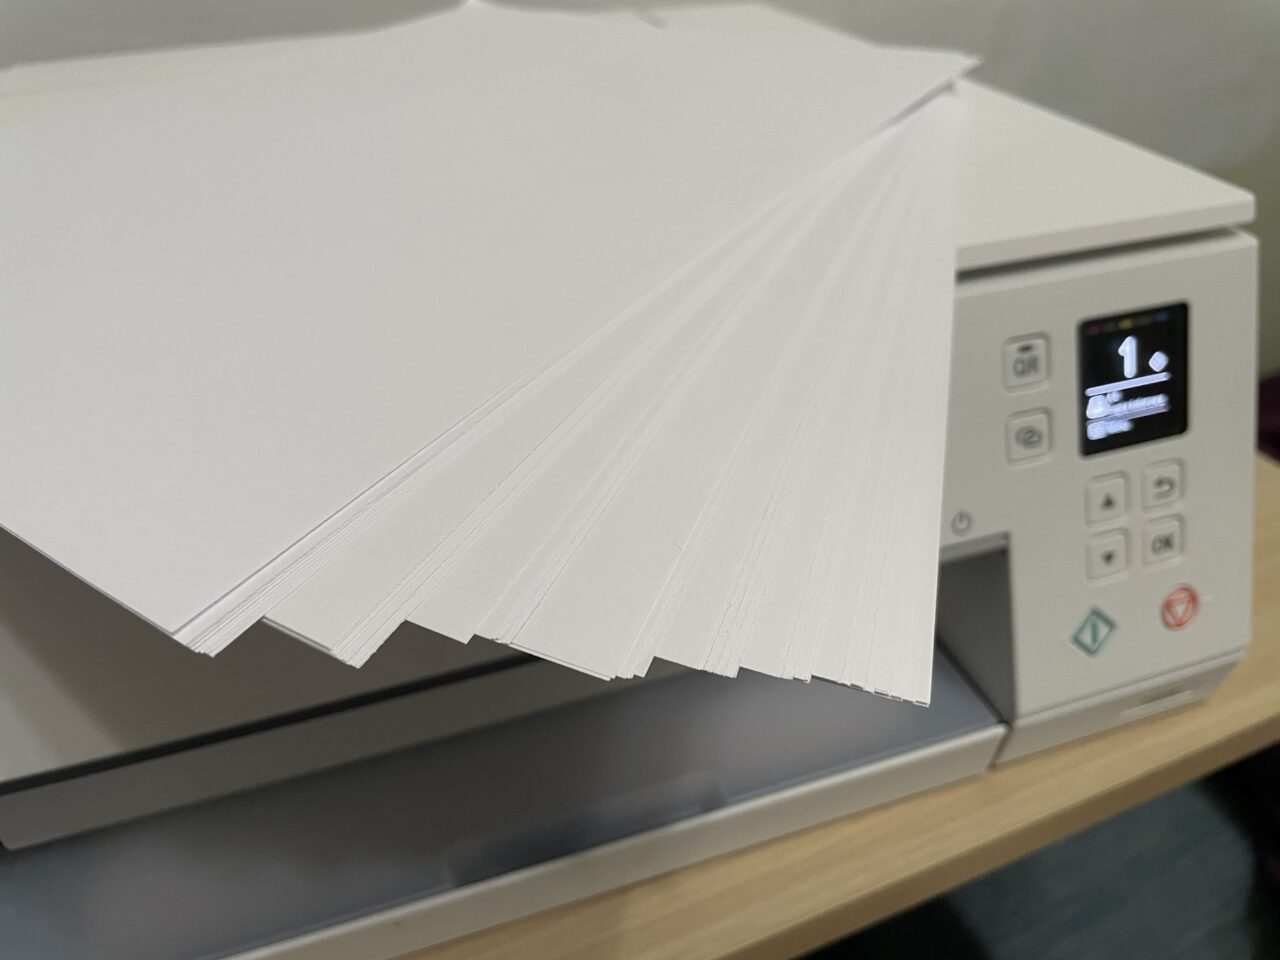 Stos białych kartek papieru na górze białej drukarki z włączonym wyświetlaczem pokazującym numer 1.